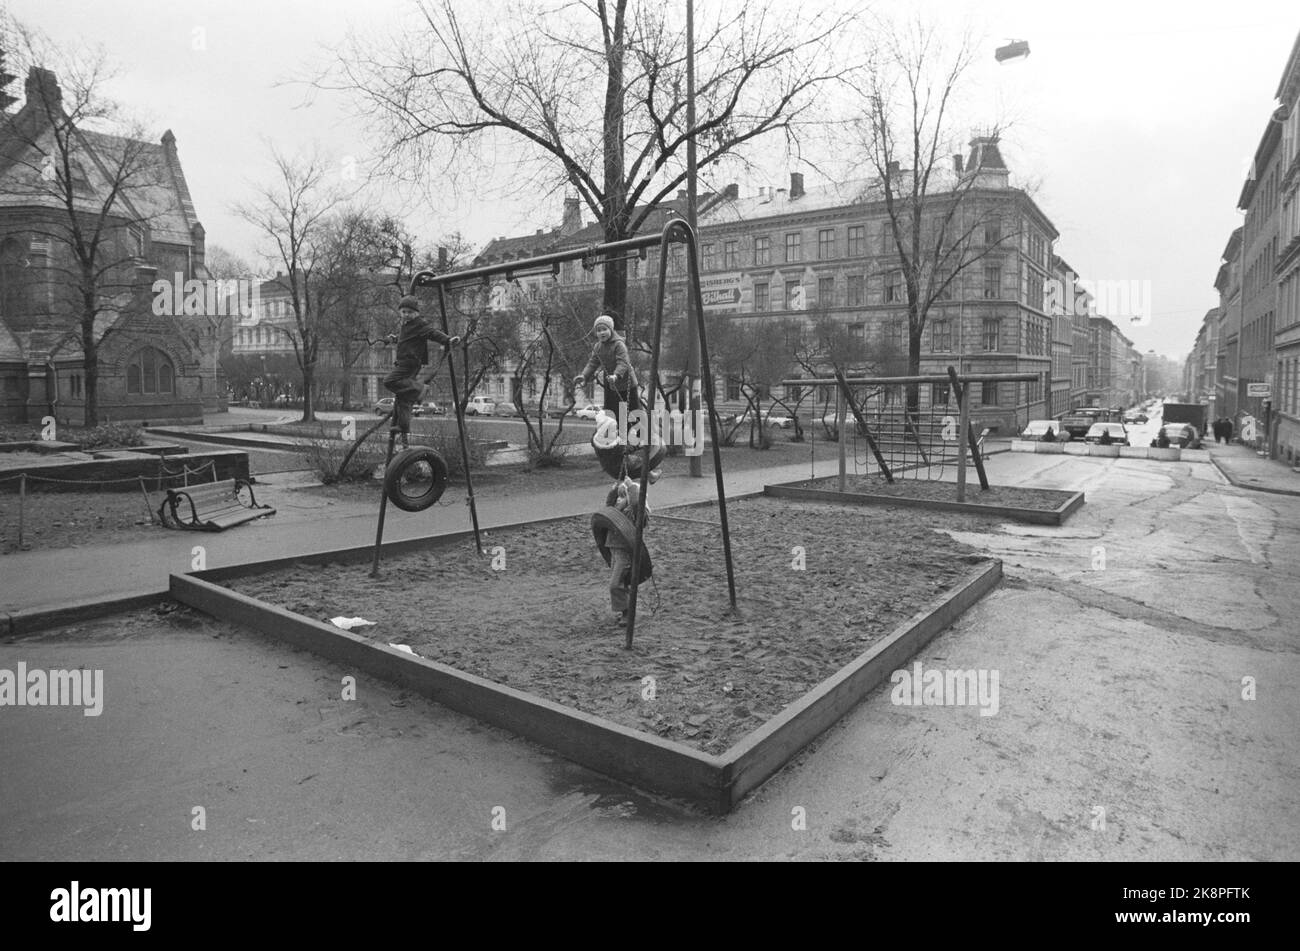 Oslo am 27. November 1975. Kinder spielen in den Oslogates, hier von Markveien hinter der Paulskirche. Grünerløkka. Denken Sie Daran. Schwellen. Sandkasten. Foto: NTB / NTB Stockfoto